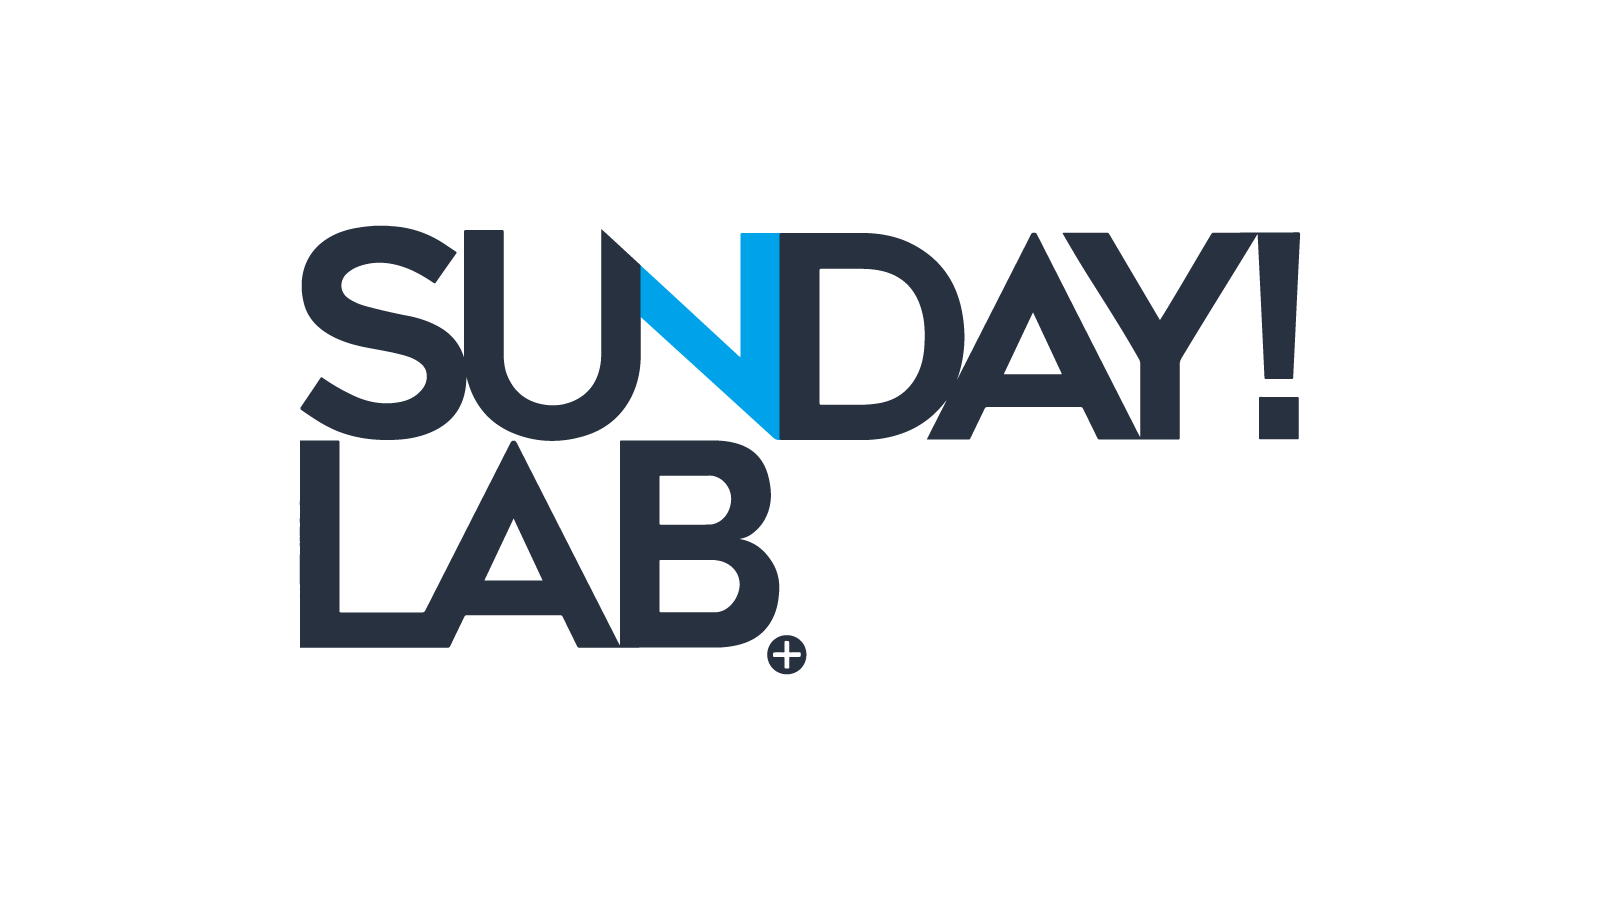 Sunday Lab